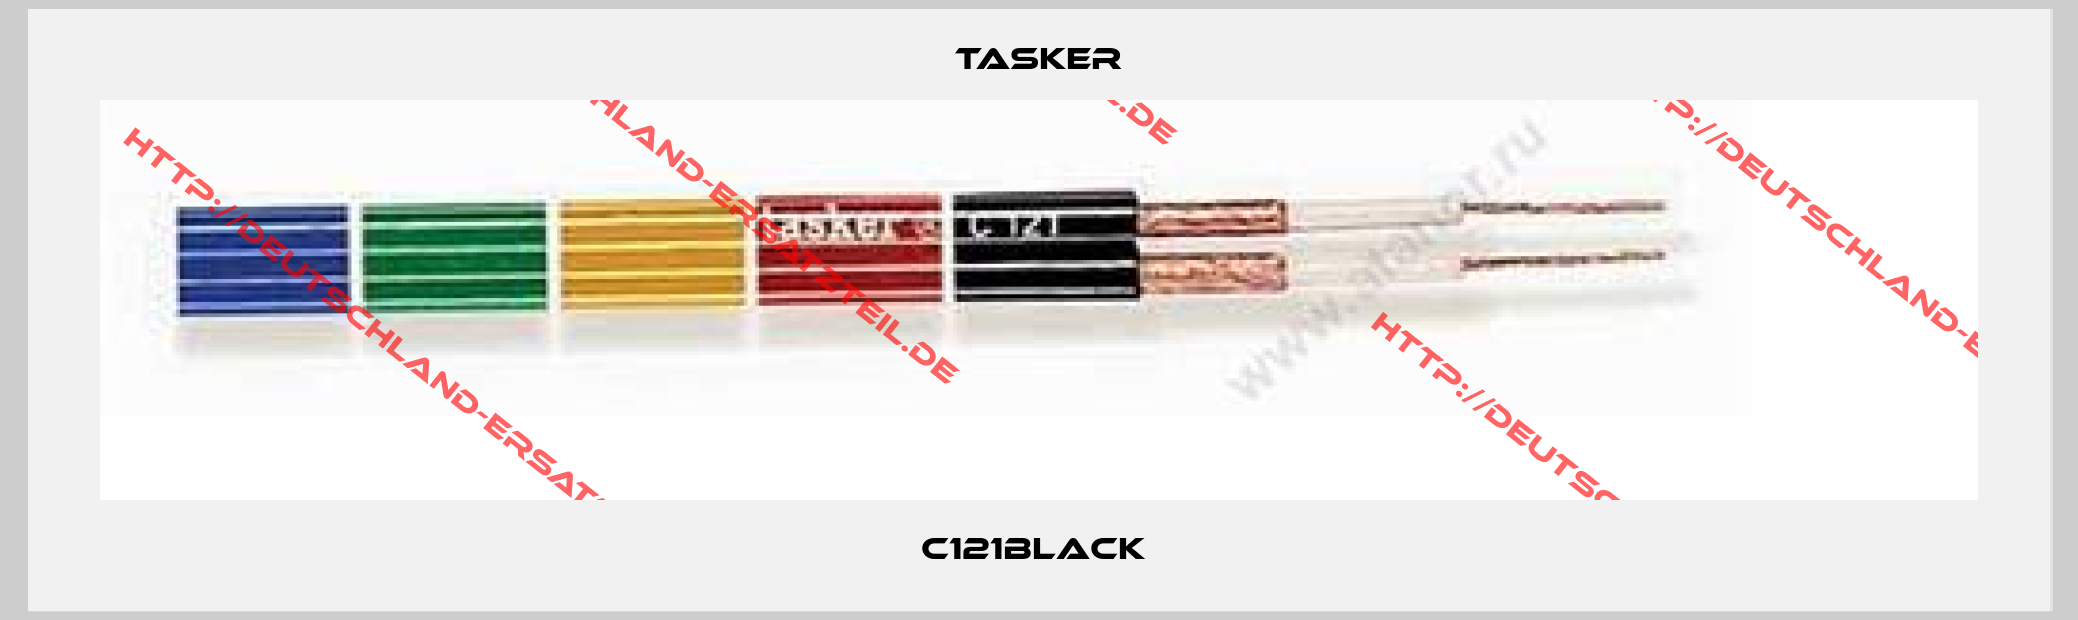 Tasker-C121black 